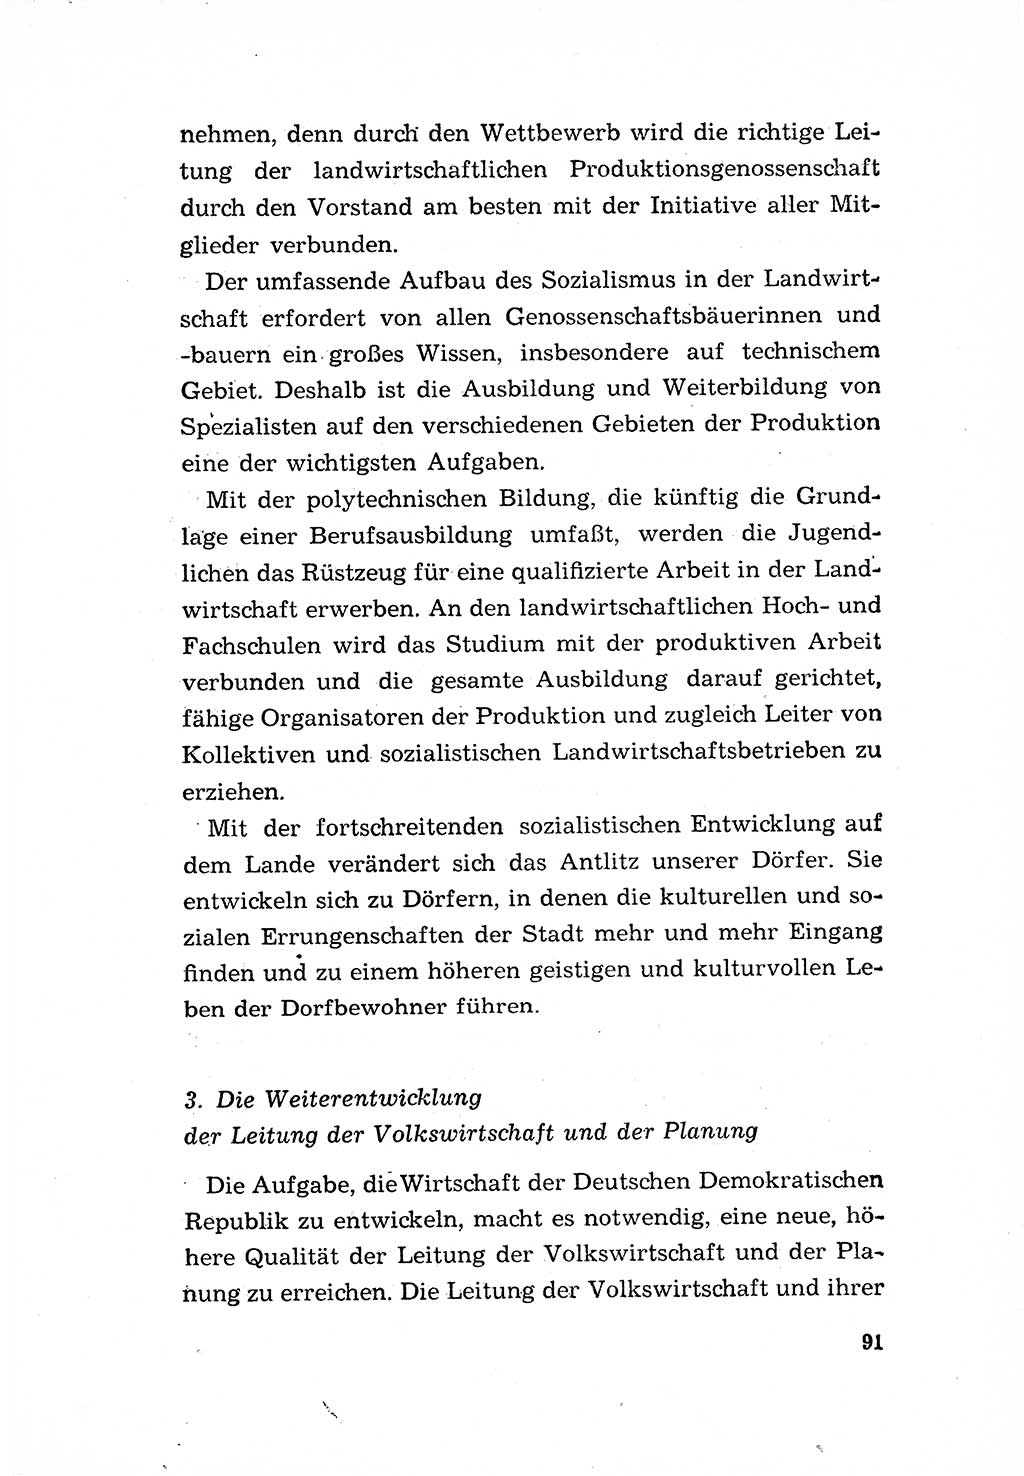 Programm der Sozialistischen Einheitspartei Deutschlands (SED) [Deutsche Demokratische Republik (DDR)] 1963, Seite 91 (Progr. SED DDR 1963, S. 91)